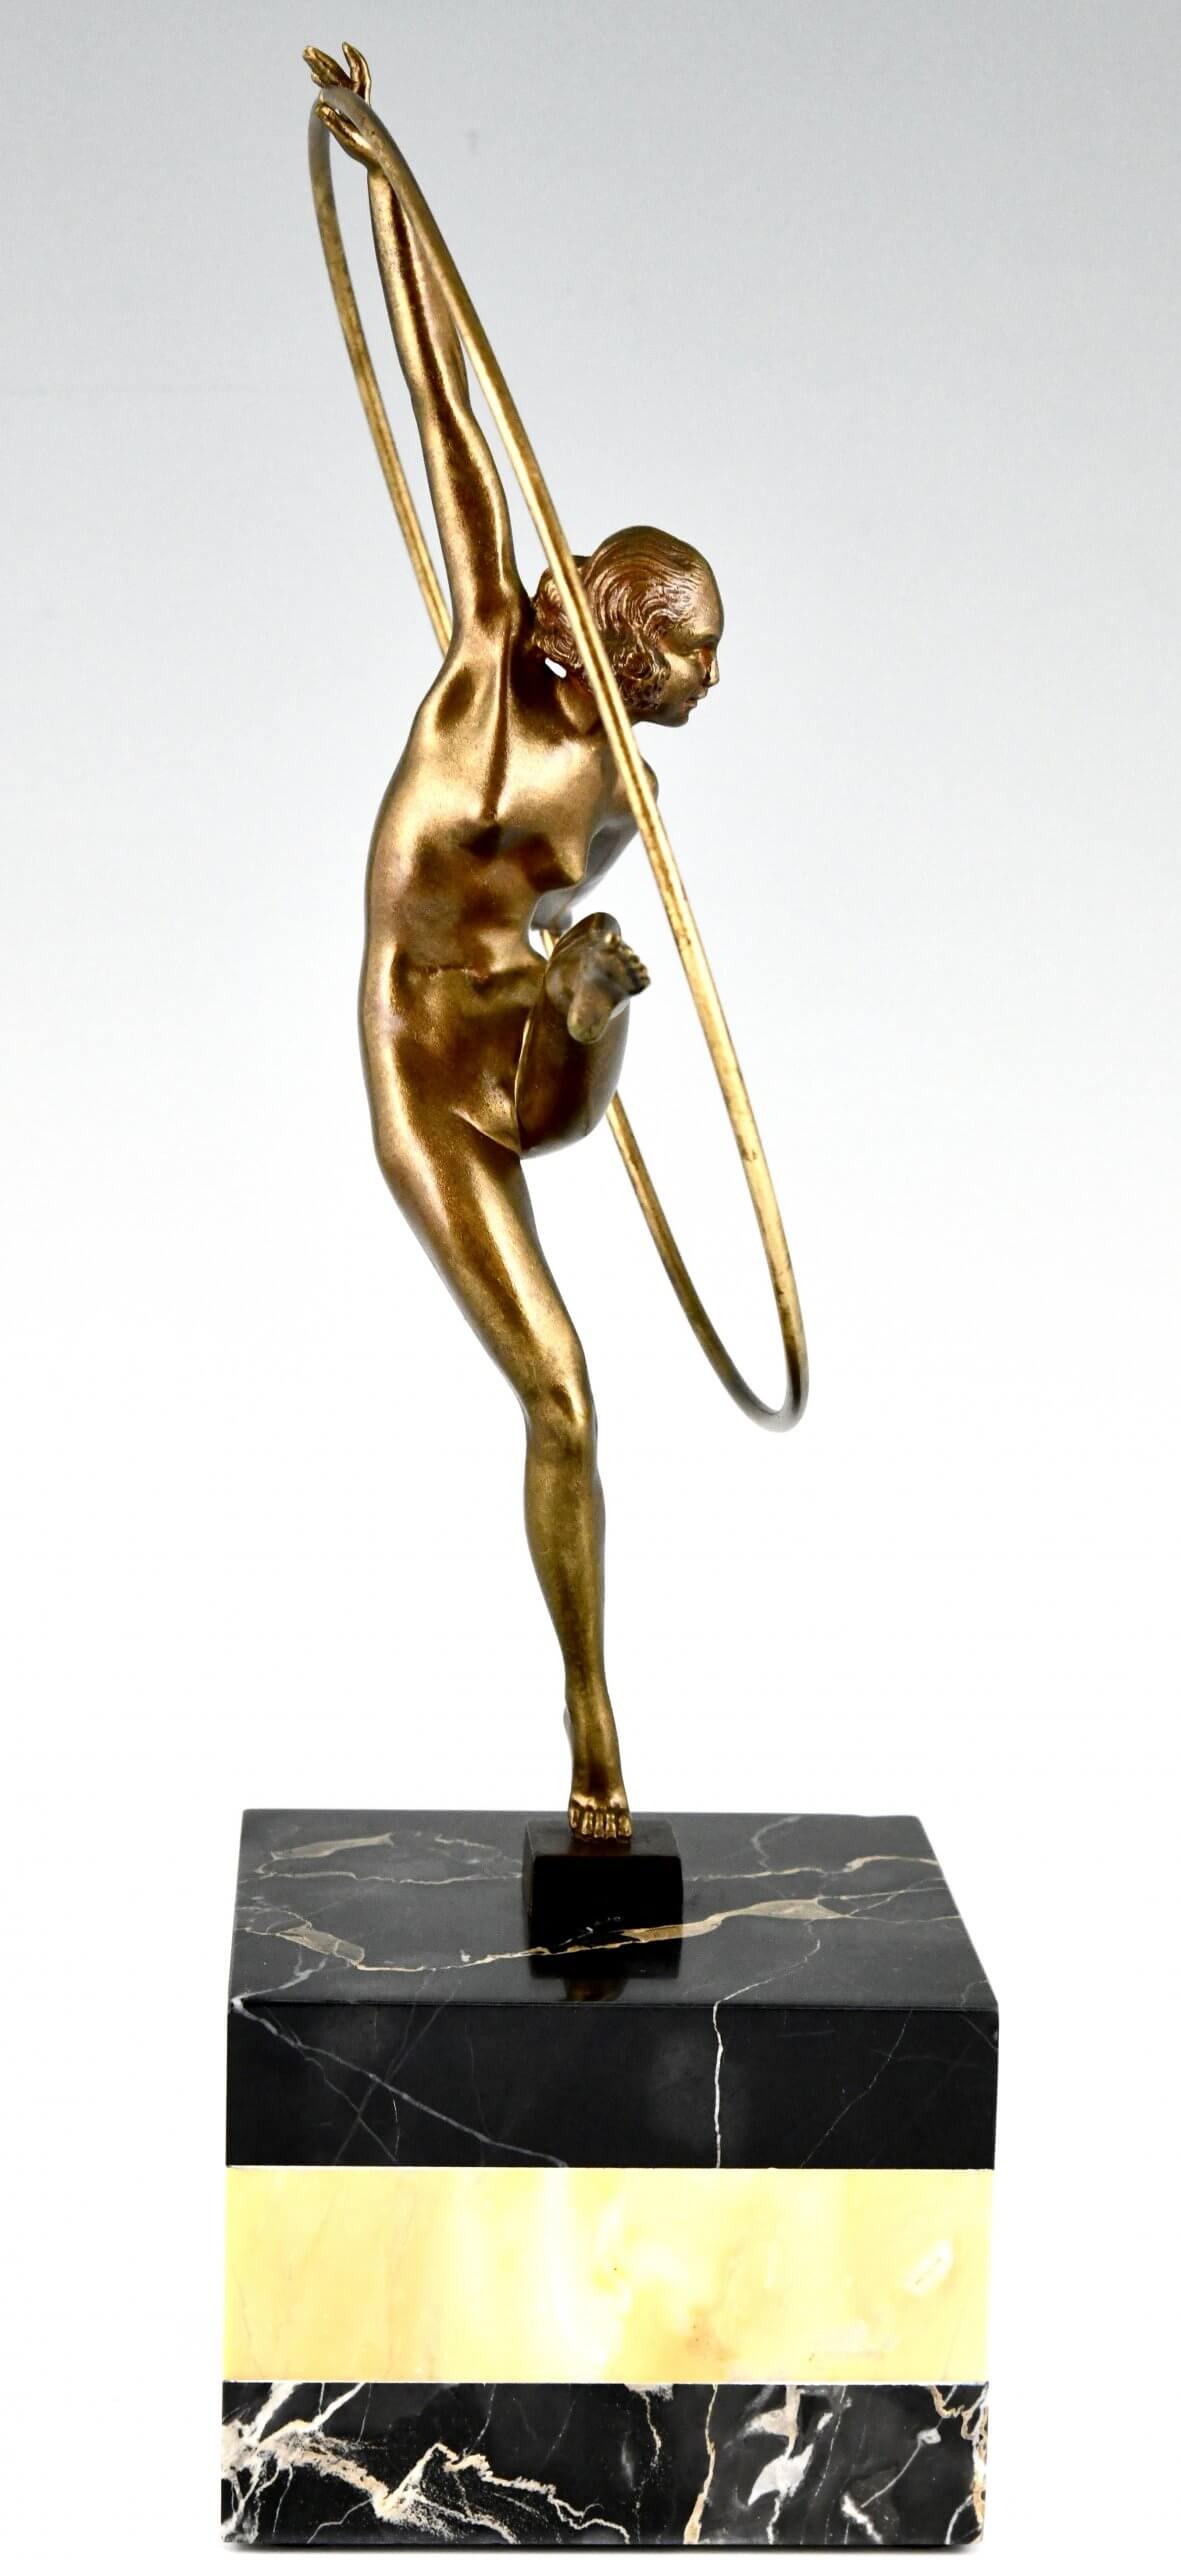 Art Deco bronze sculpture hoop dancer.